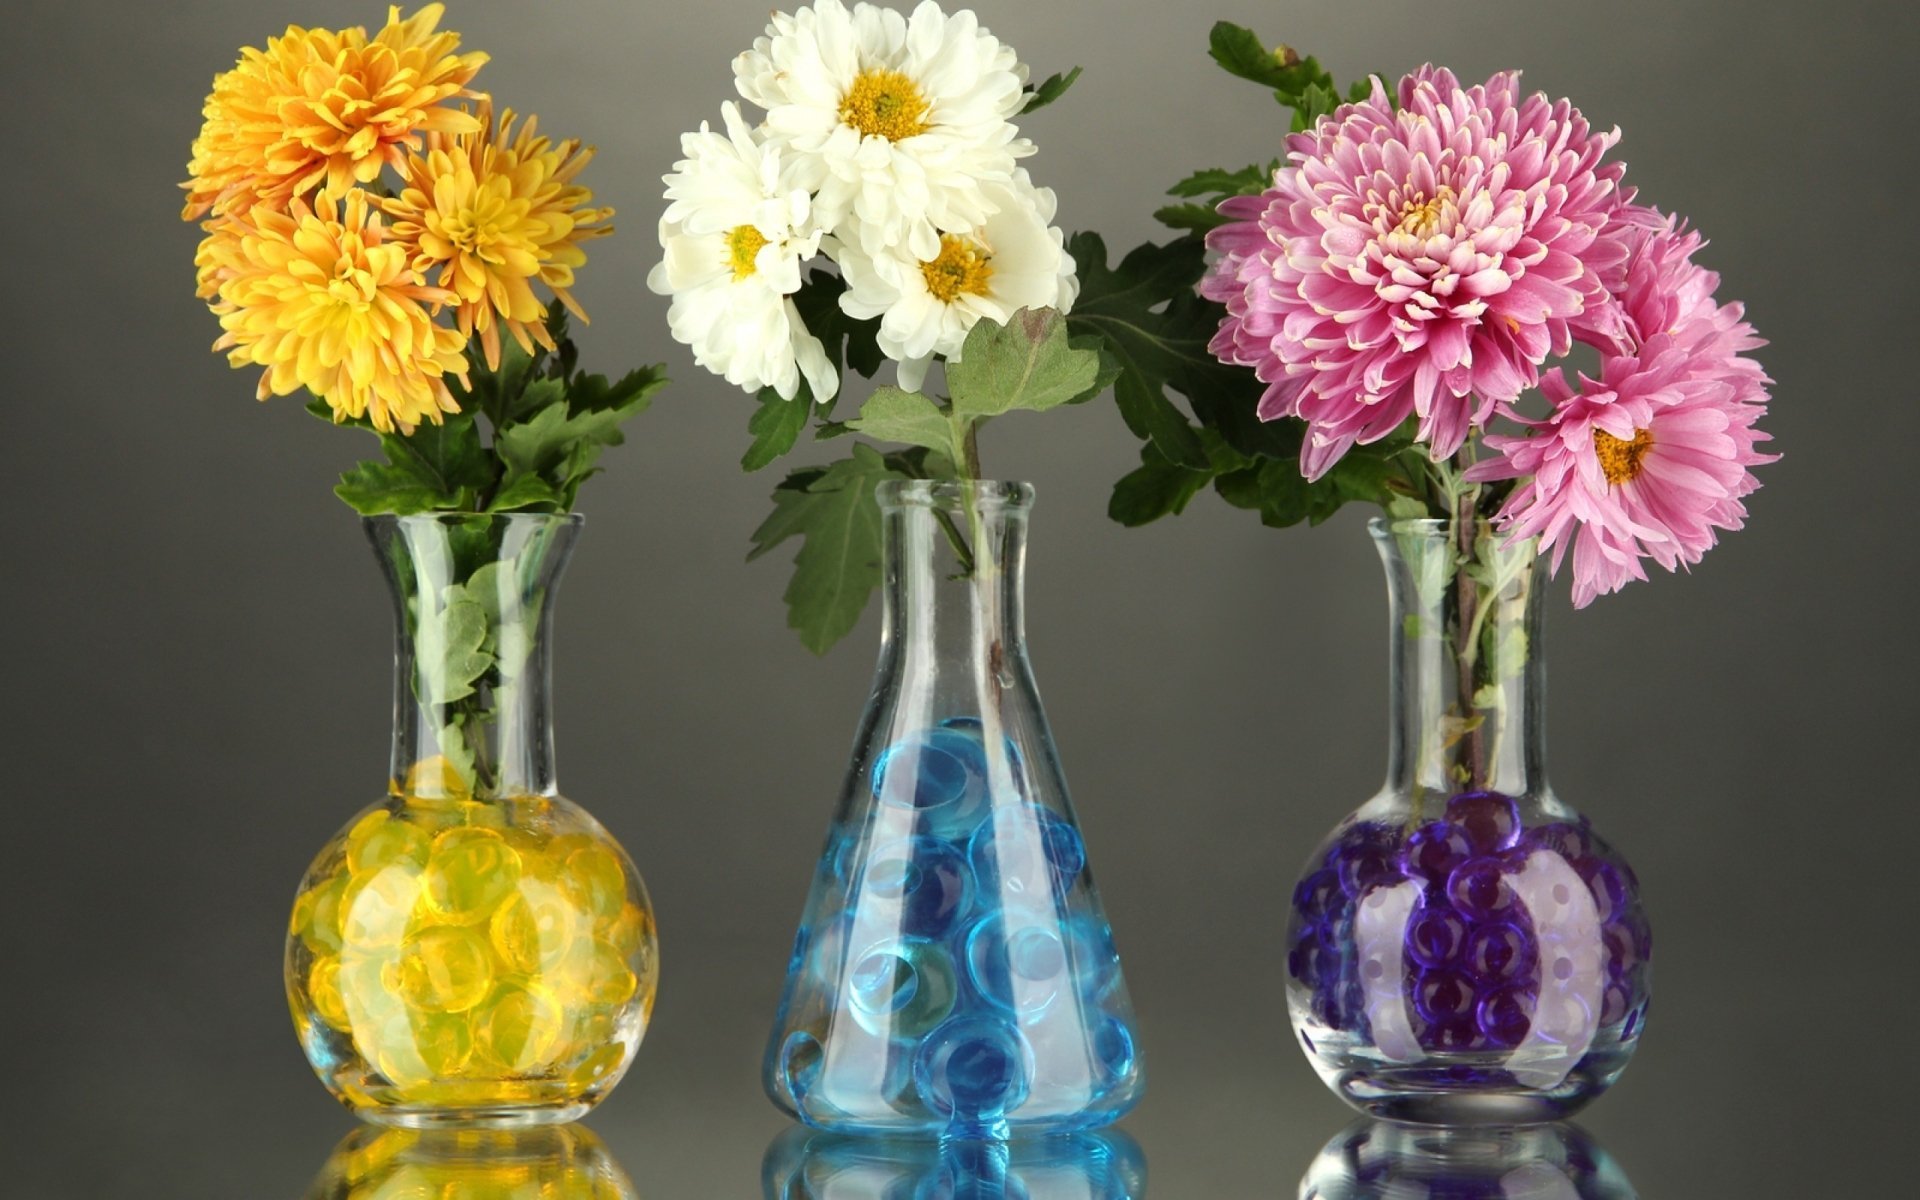 Как стоят хризантемы в вазе. Цветы в вазе. Хризантемы в вазе. Букеты в вазах. Красивый букет в вазе.